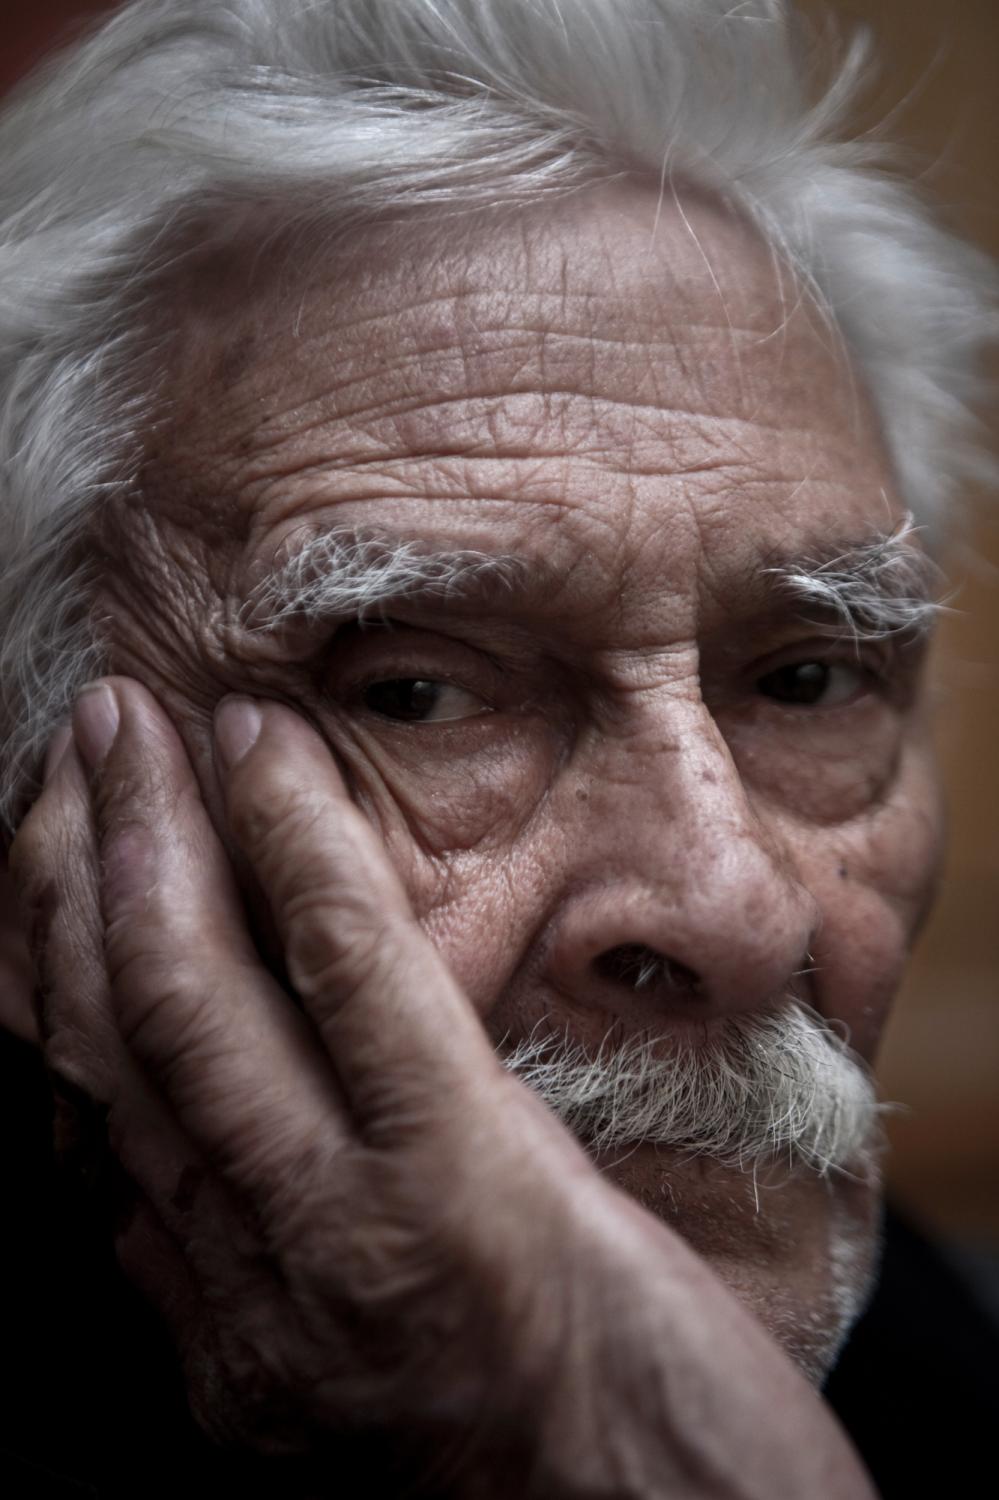 Portraits - Don José in Mexico City, Mexico